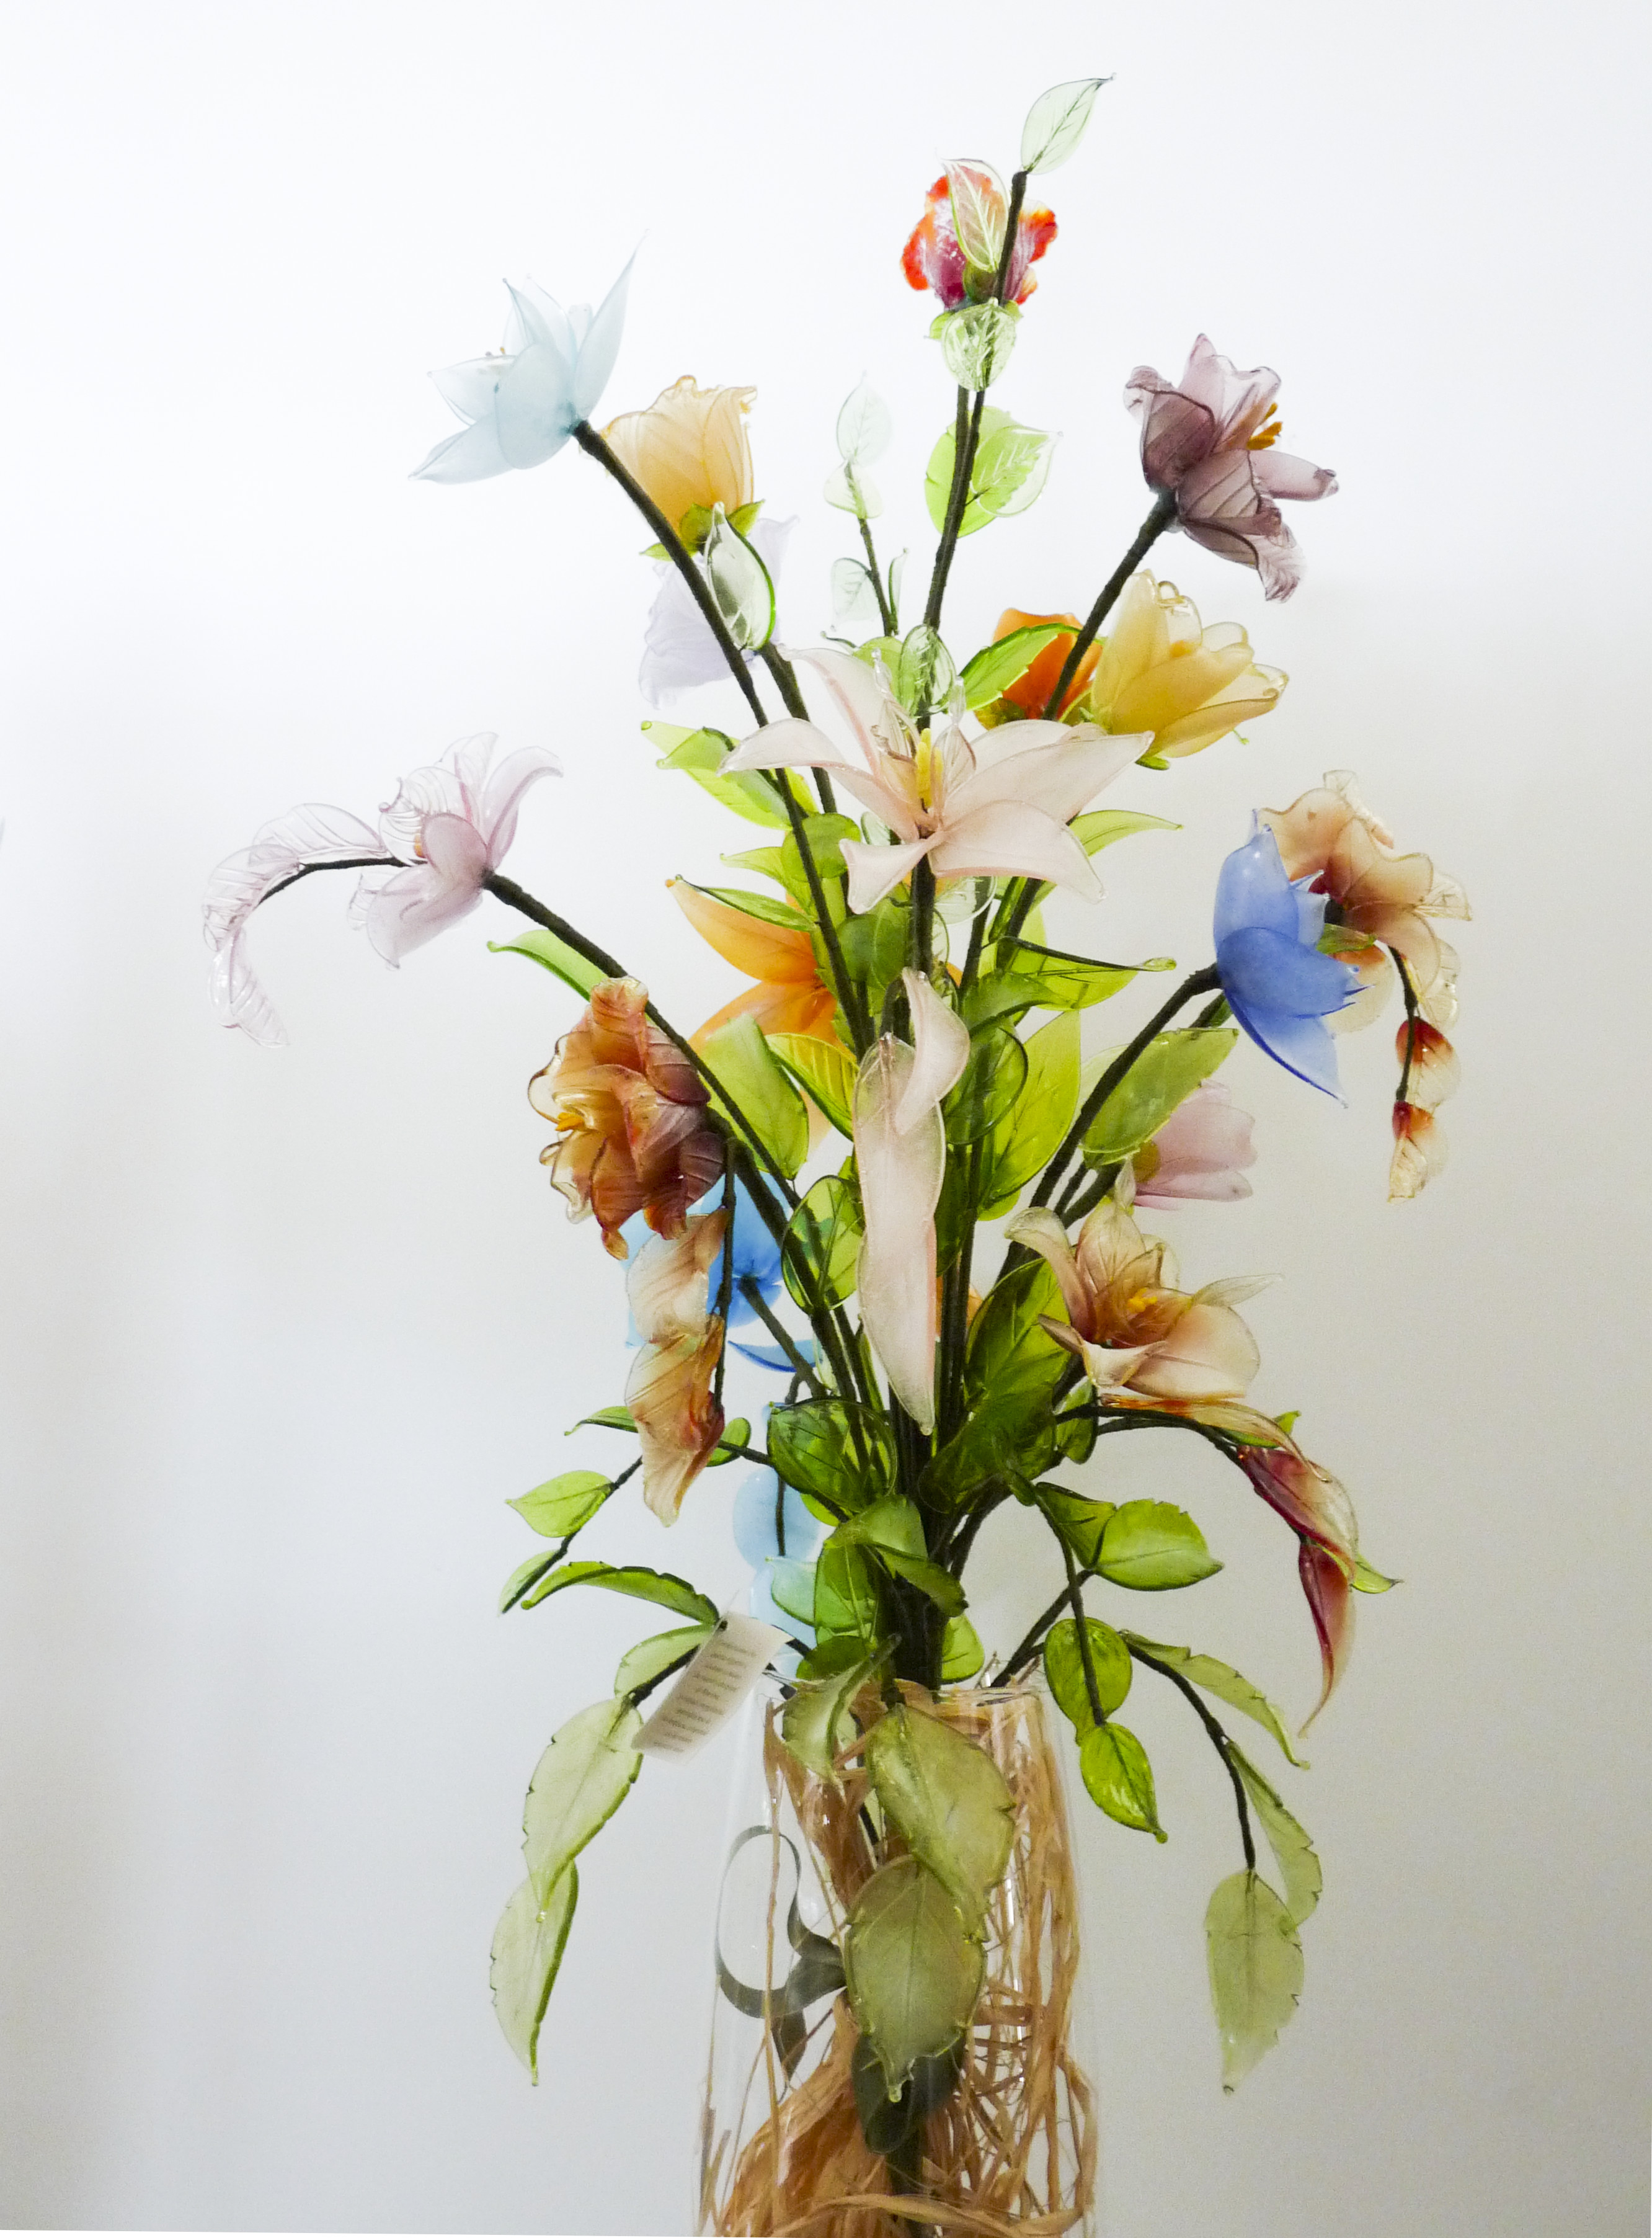 Vaso composizione di fiori in vetro, di Murano, assortiti per forma e dimensione, appoggiati su un vaso trasparente, immagine in primo piano.